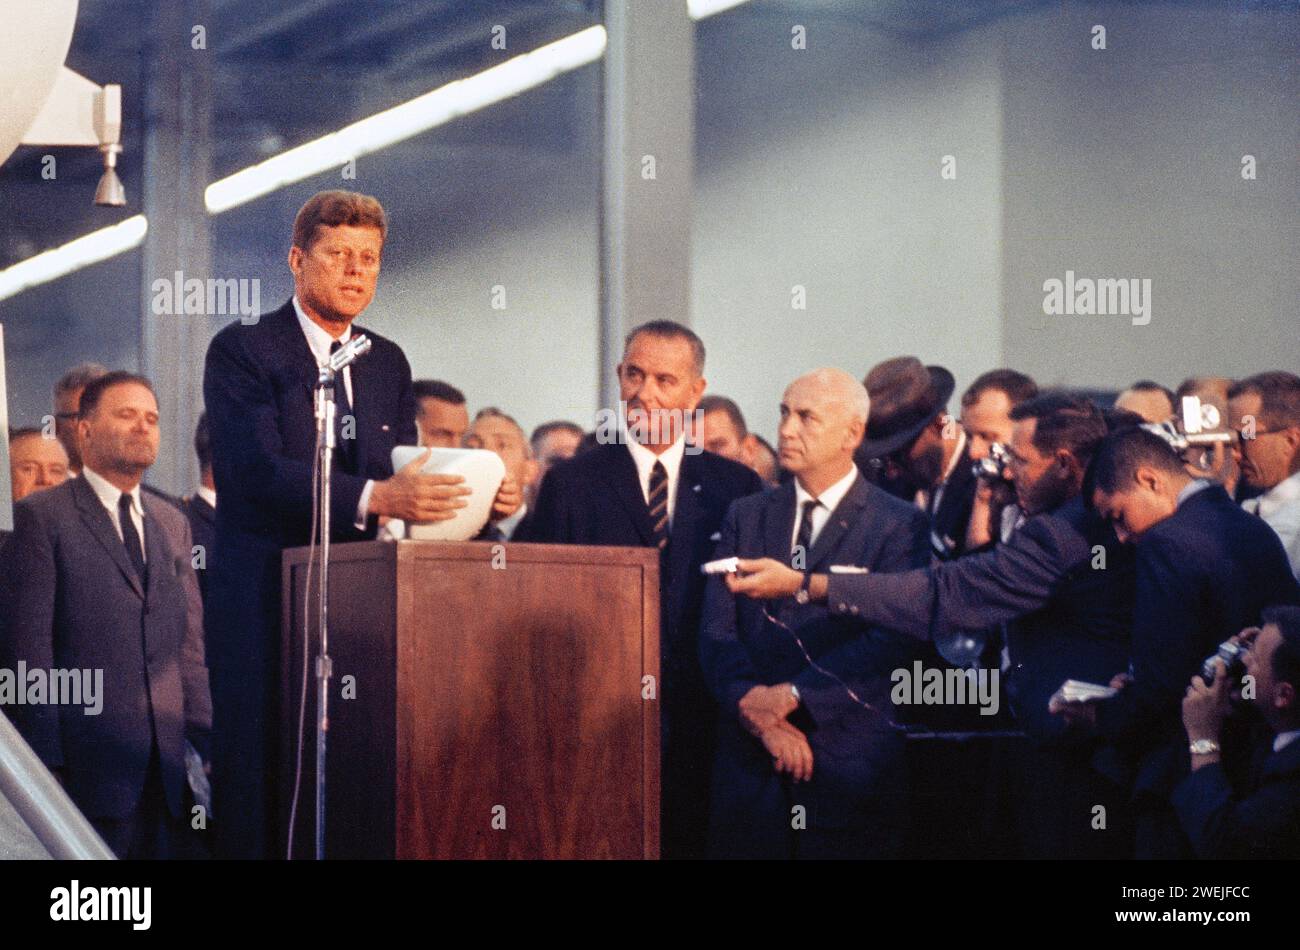 Le président américain John F. Kennedy s'adressant à des représentants des médias et des employés du site 3 au cours de sa visite, notamment le vice-président américain Lyndon B. Johnson ; le Dr Robert R. Gilruth ; et James E. Webb, administrateur de la NASA, Manned Spacecraft Center, Houston, Texas, USA, 12 septembre 1962 Banque D'Images